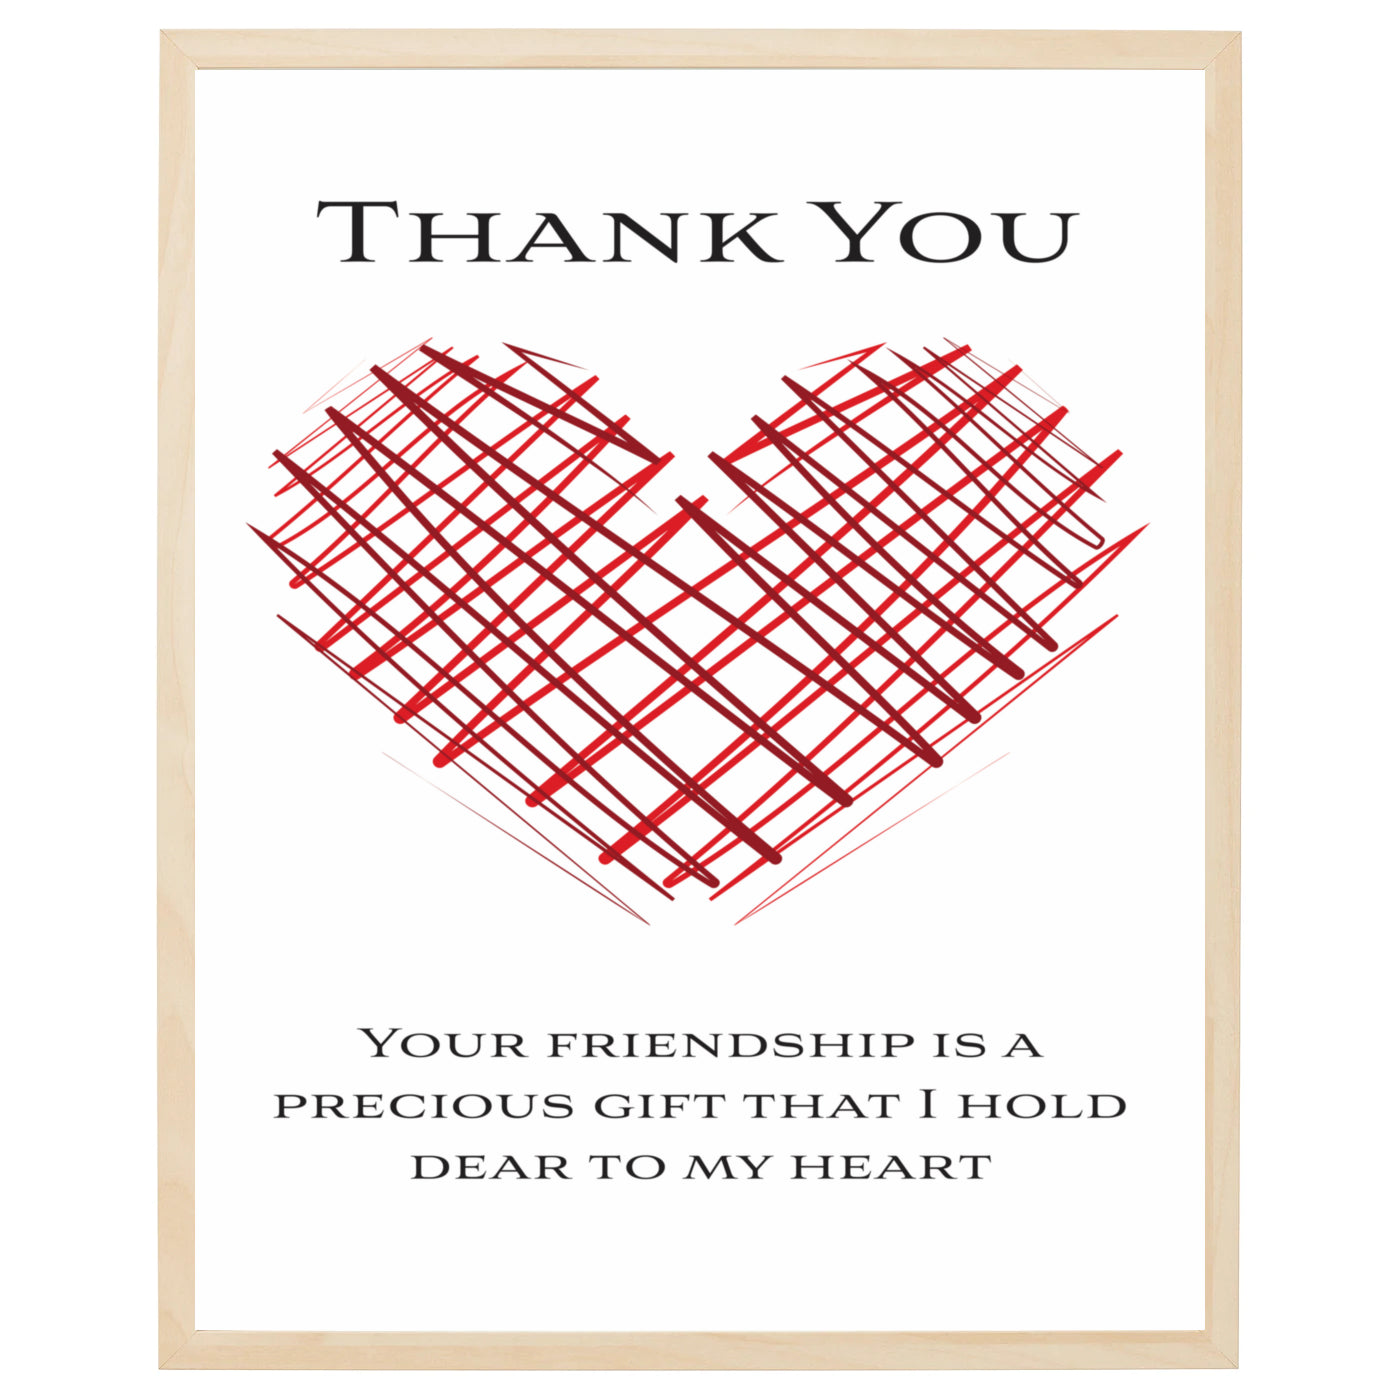 Venskabsplakat med rødt hjerte og tekst 'Thank you' - vis din taknemmelighed for venskab